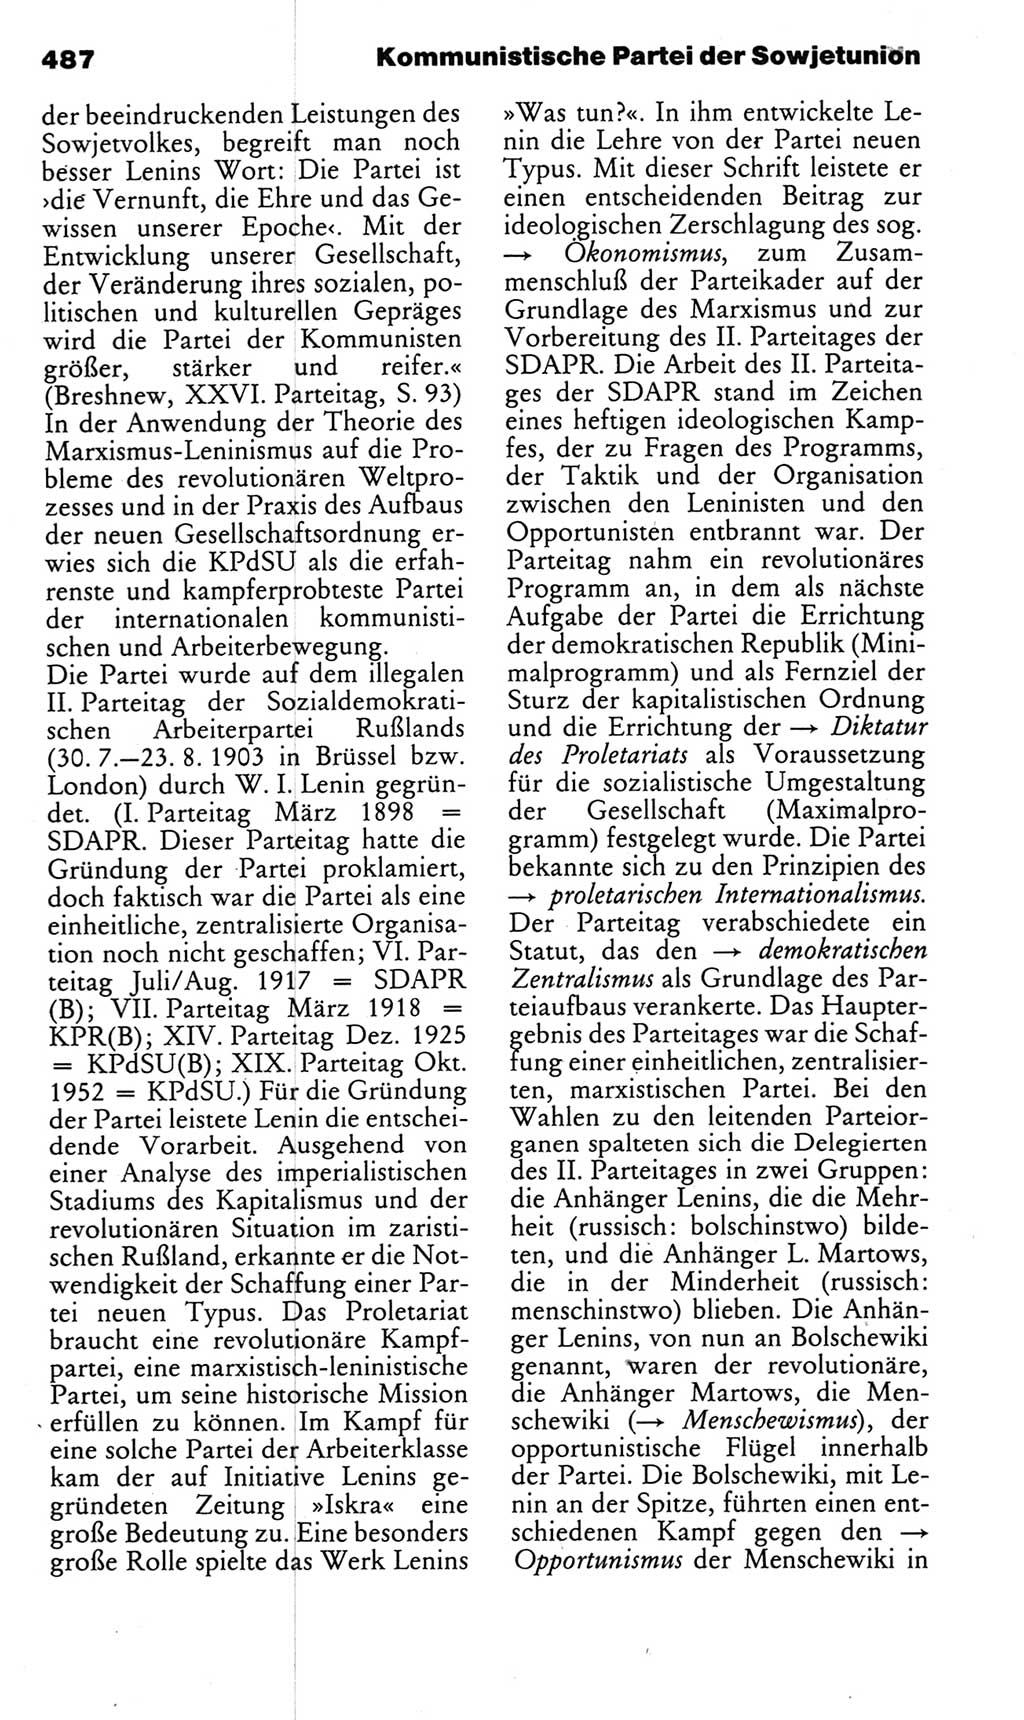 Kleines politisches Wörterbuch [Deutsche Demokratische Republik (DDR)] 1983, Seite 487 (Kl. pol. Wb. DDR 1983, S. 487)